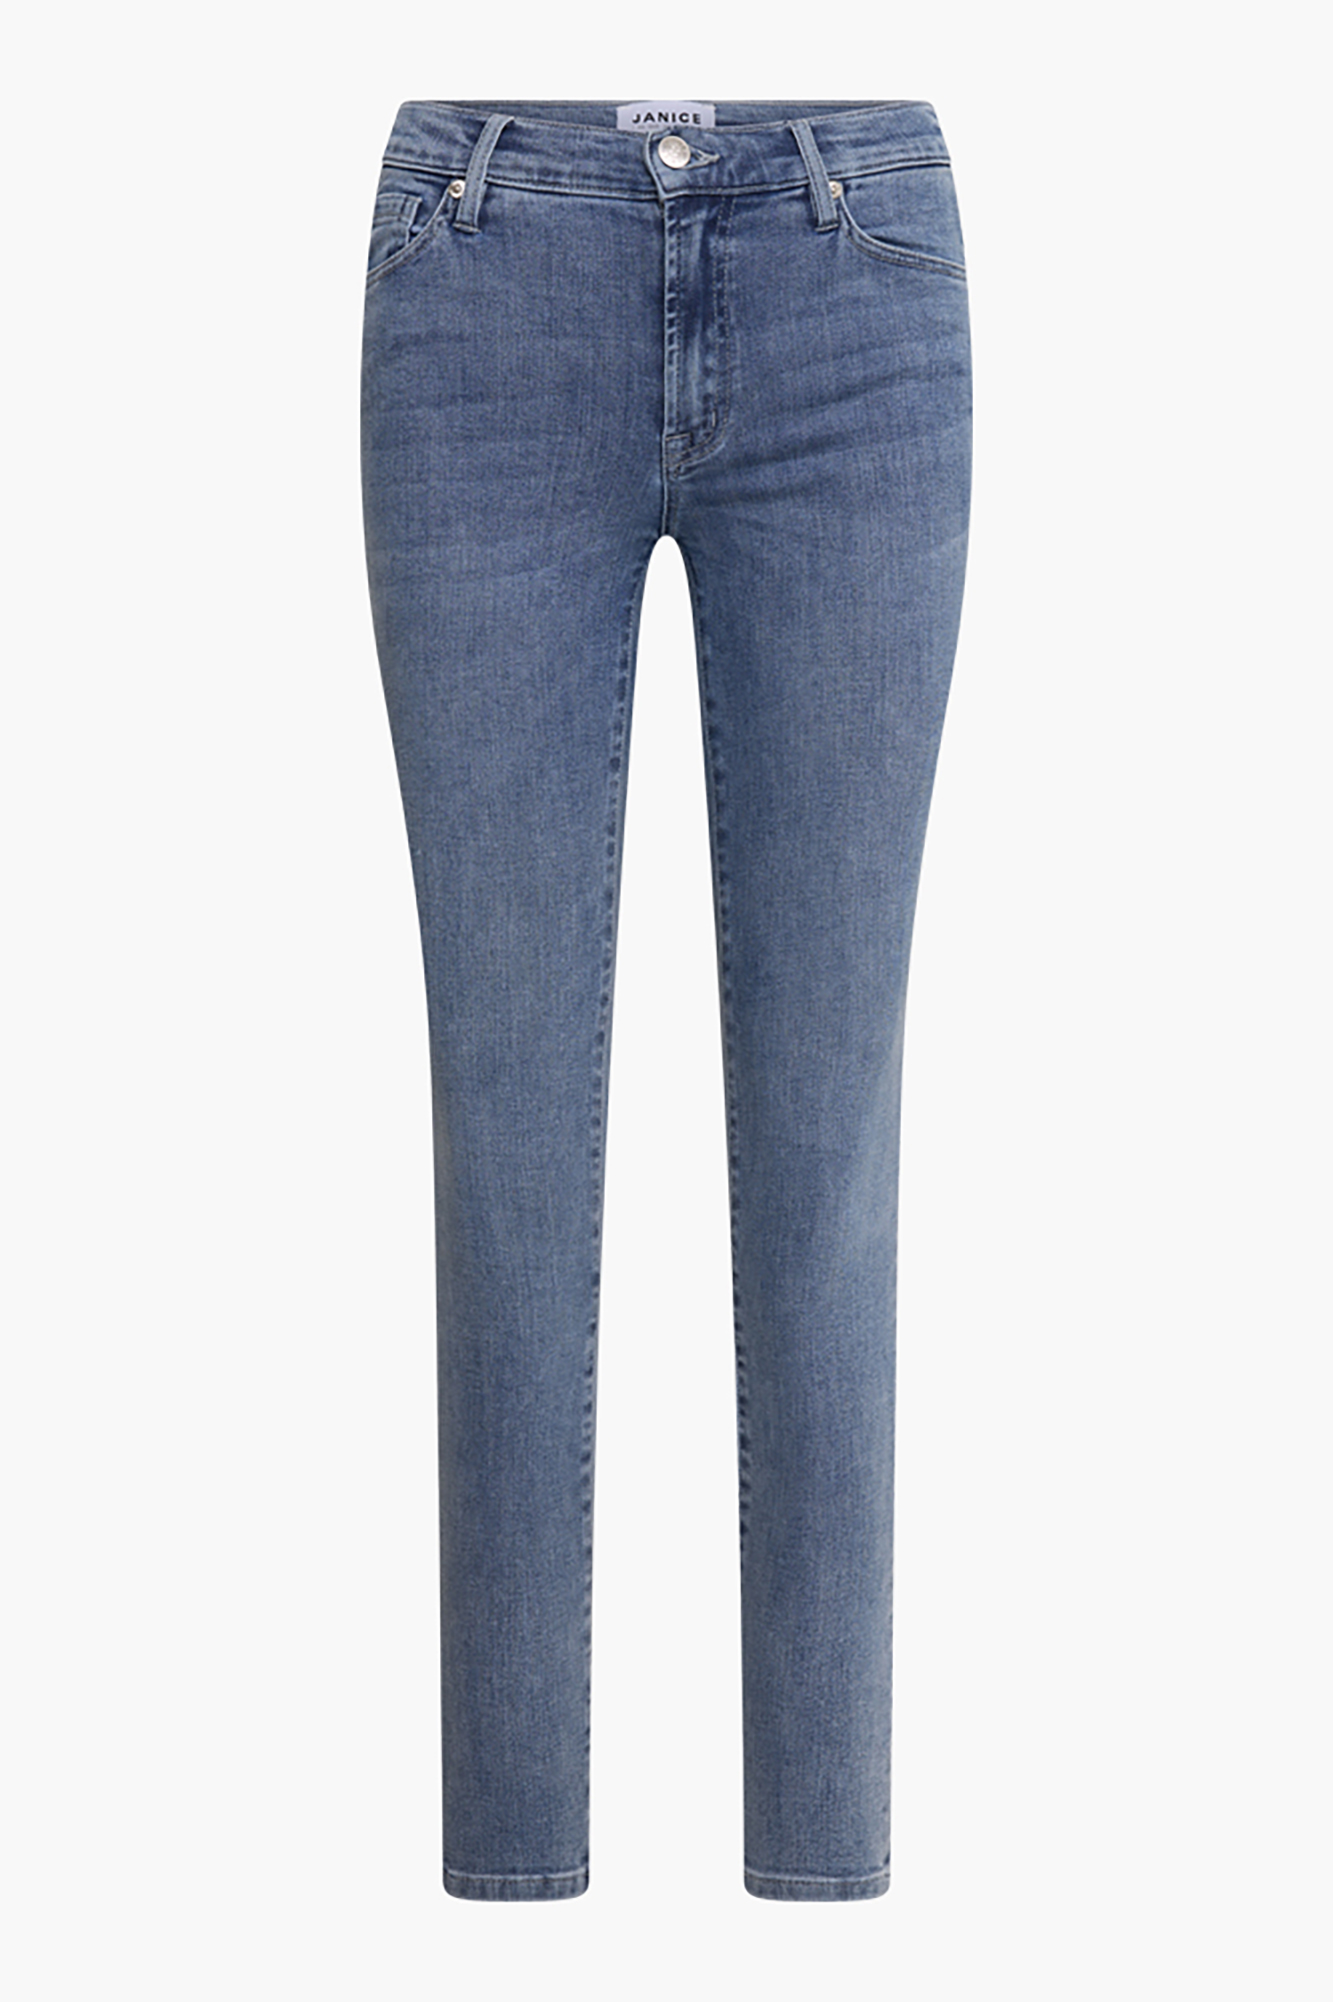 Blauwe Skinny Jeans James Blue 2707 | Shop je bij JANICE